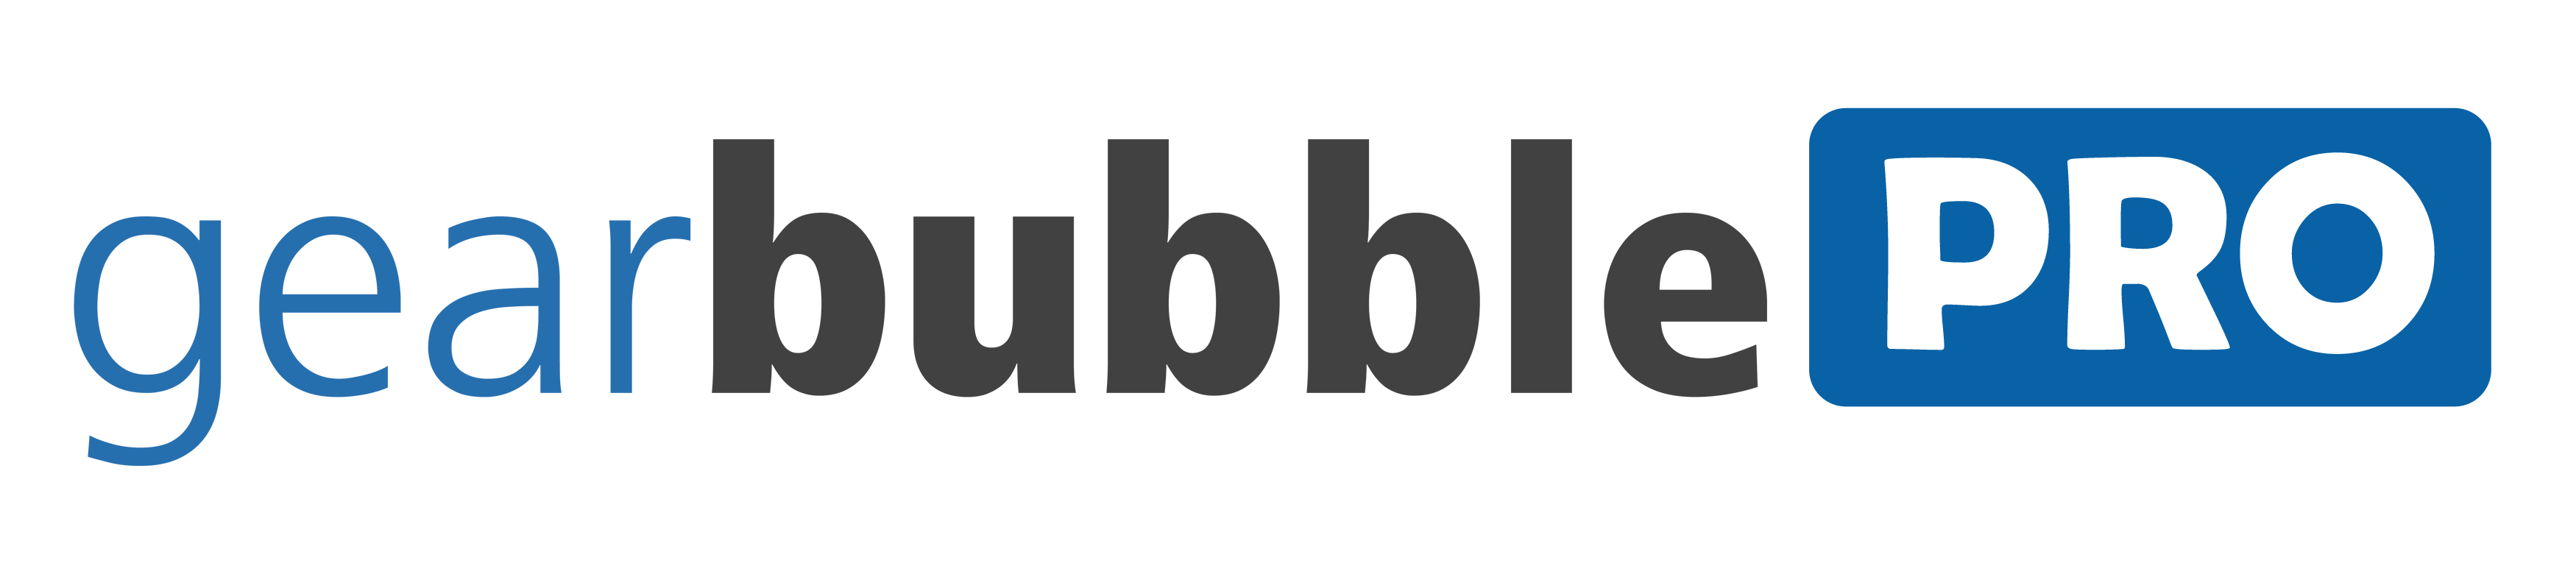 Gearbubble logo